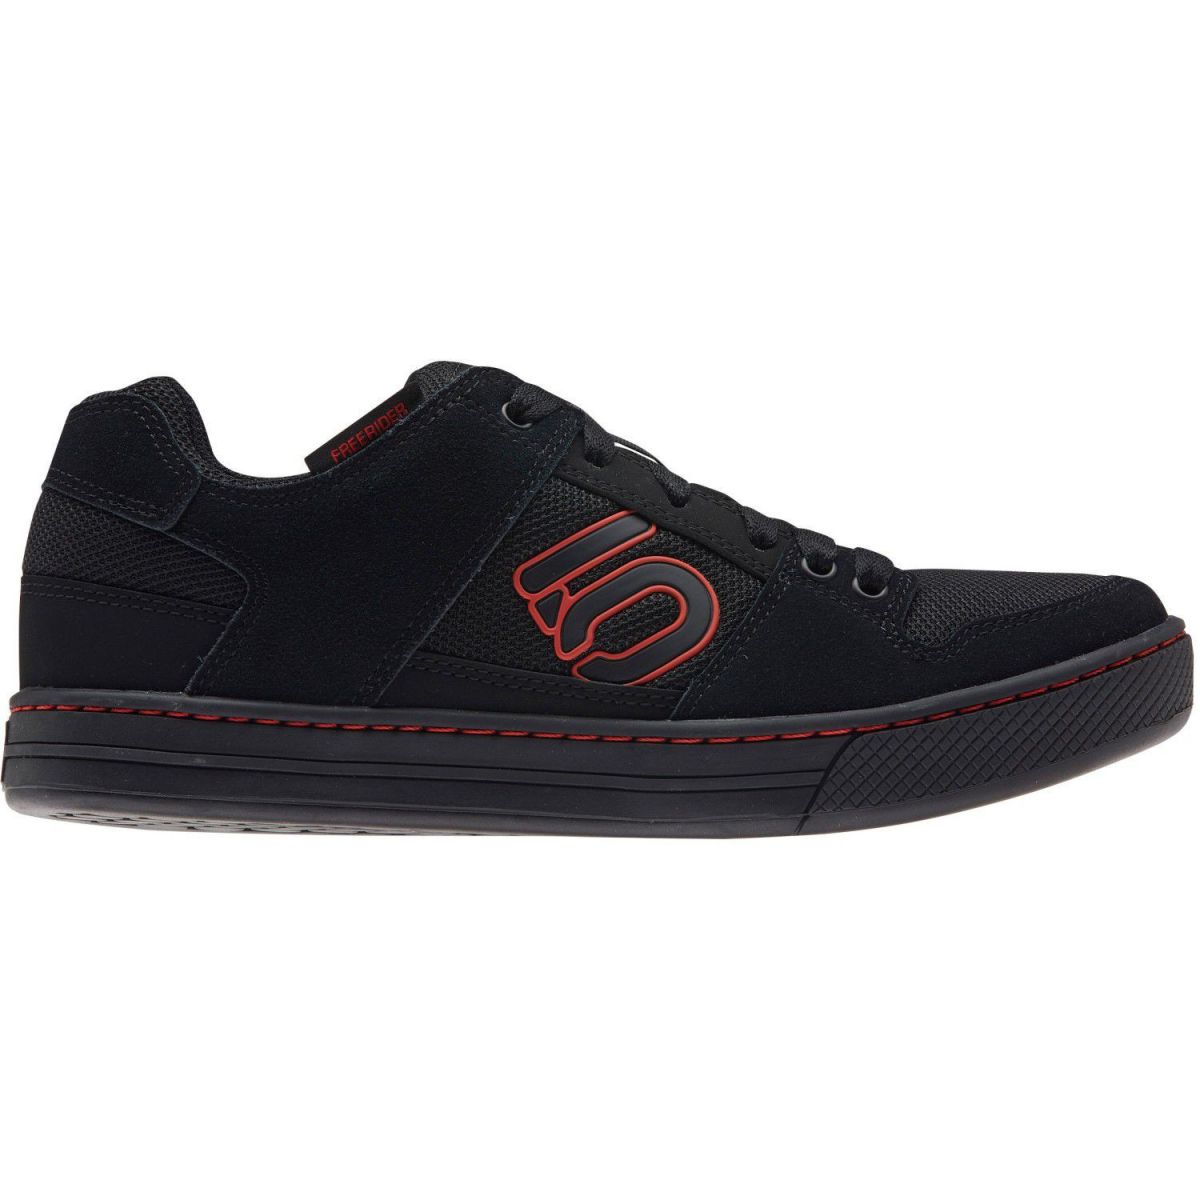 Zapatillas de enduro baratas para pedales de plataforma Five Ten Freerider negro/rojo